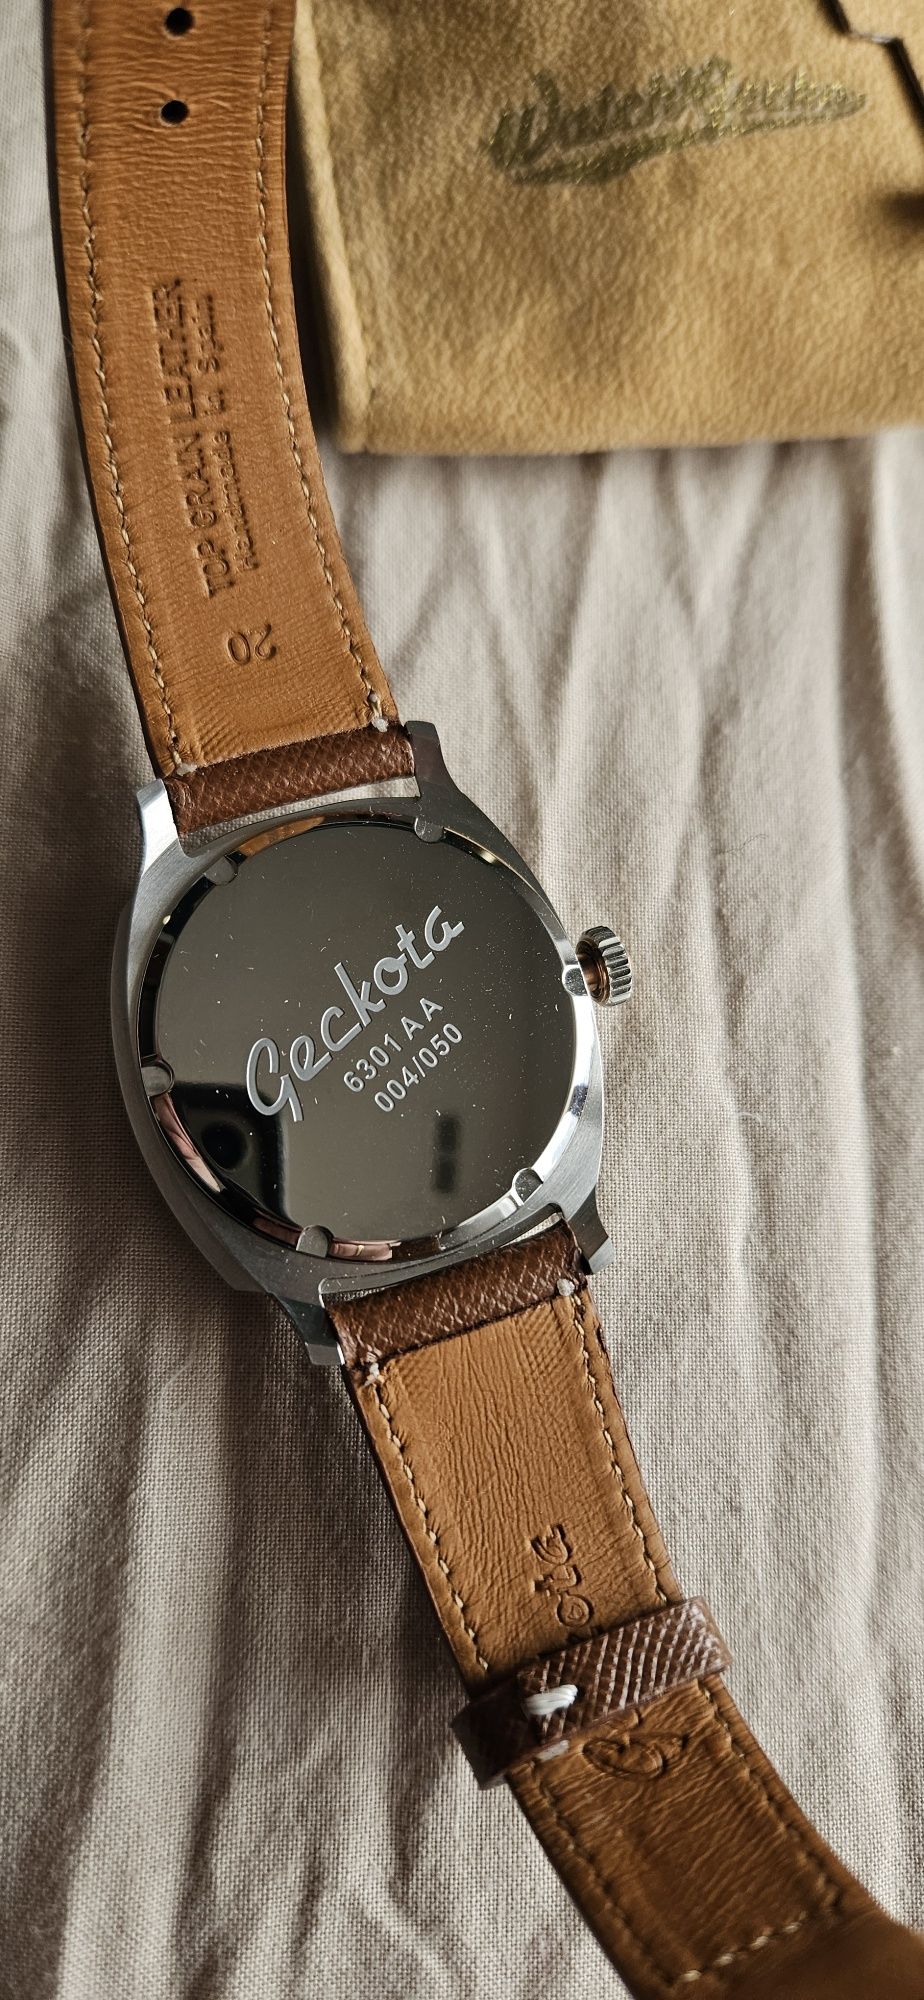 Geckota esign, piekny unikatowy zegarek w limitacji